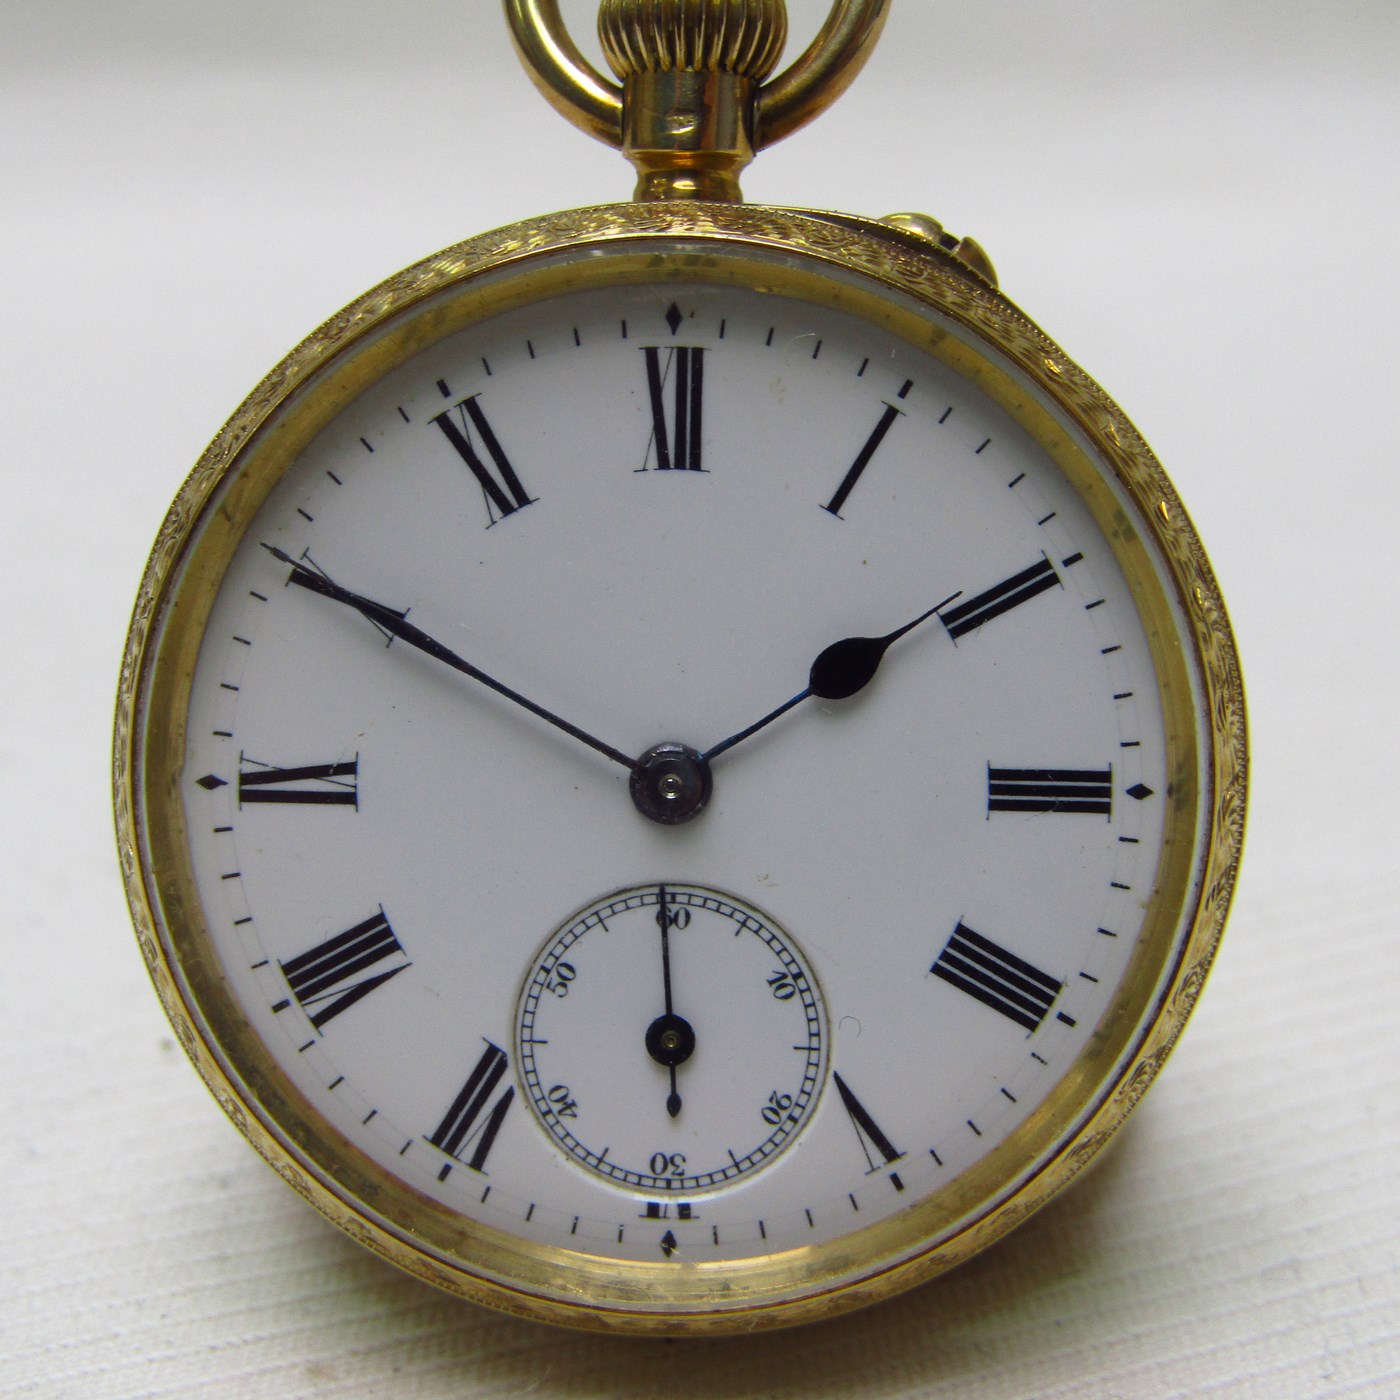 JOHN BENNETT (London). Hang watch, lepine. Ca. 1900